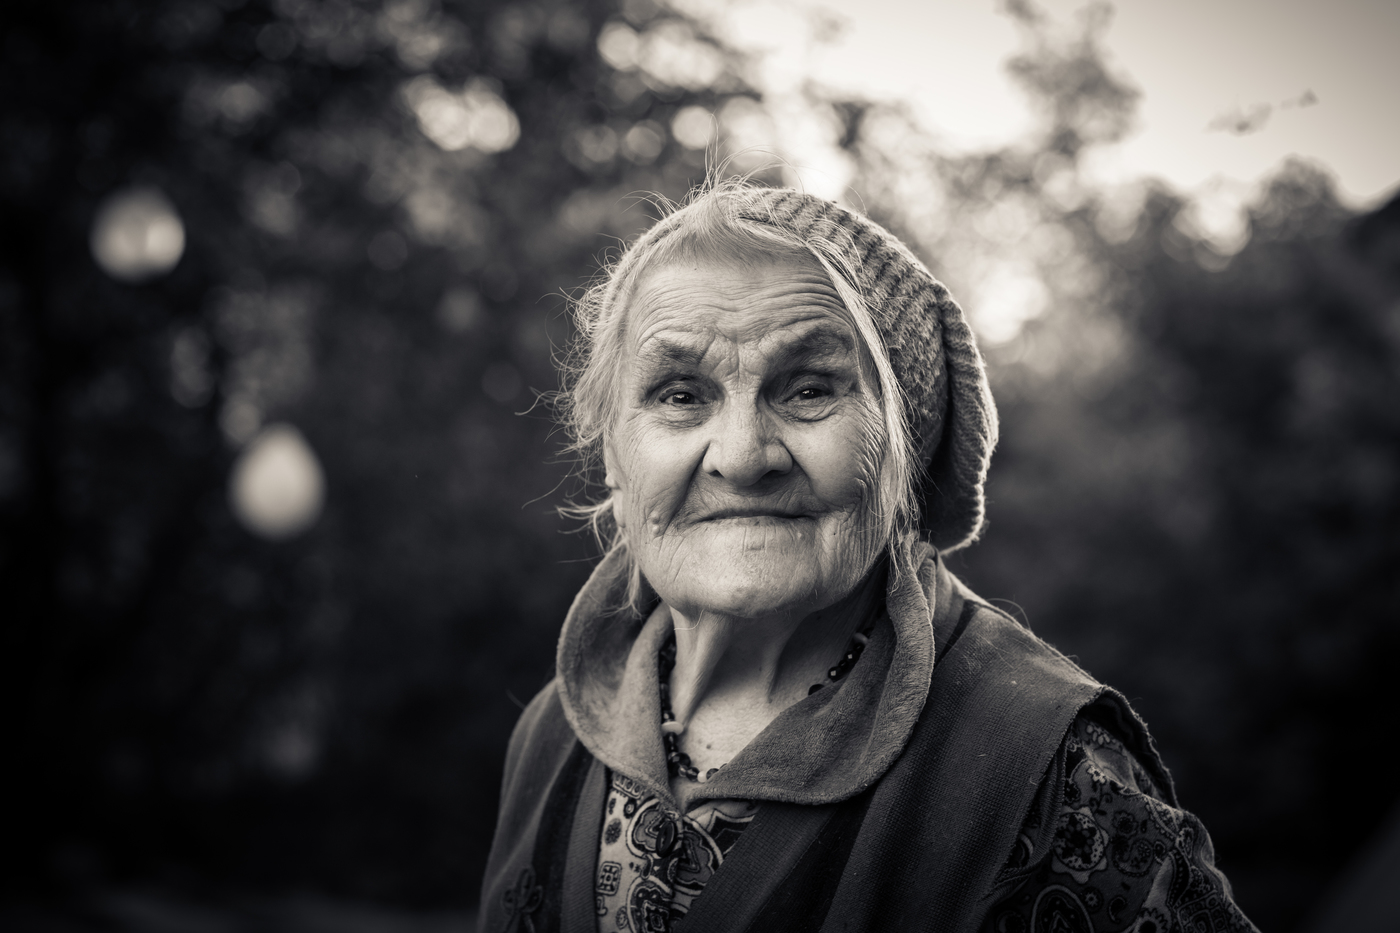 Картинка бабушка. Фотографии бабушек. Фото старухи. Старая женщина. Бабушка улыбается.